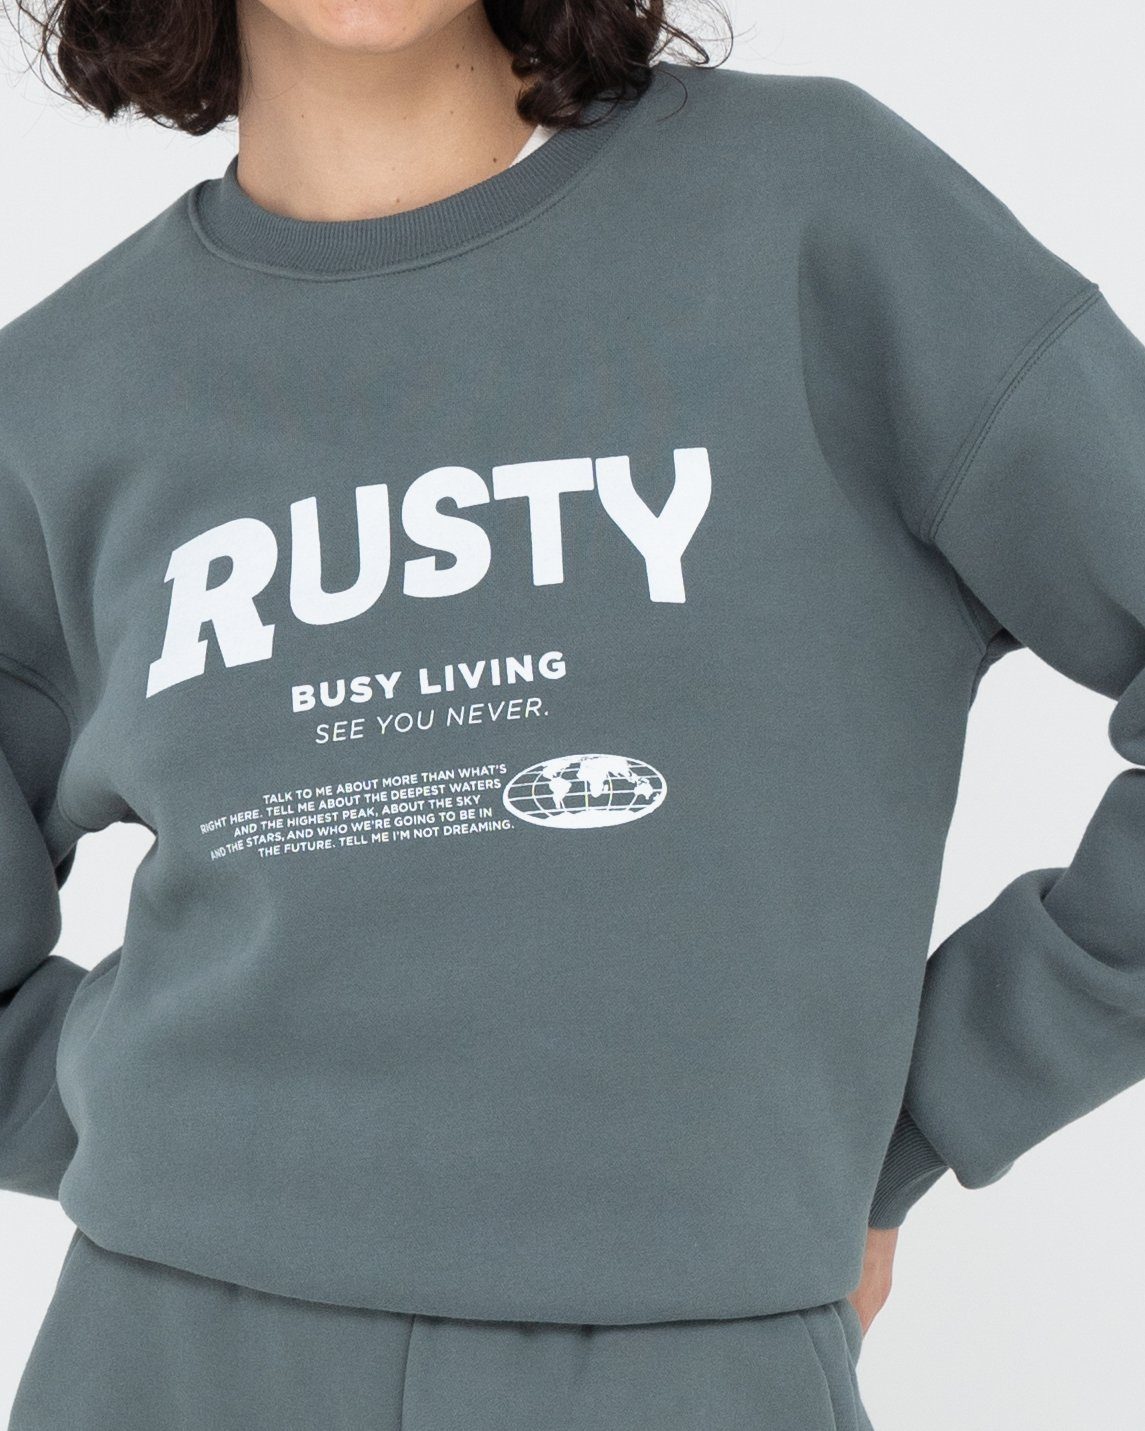 Rusty LIVING BUSY Sweatshirt RELAXED CREW FLEECE